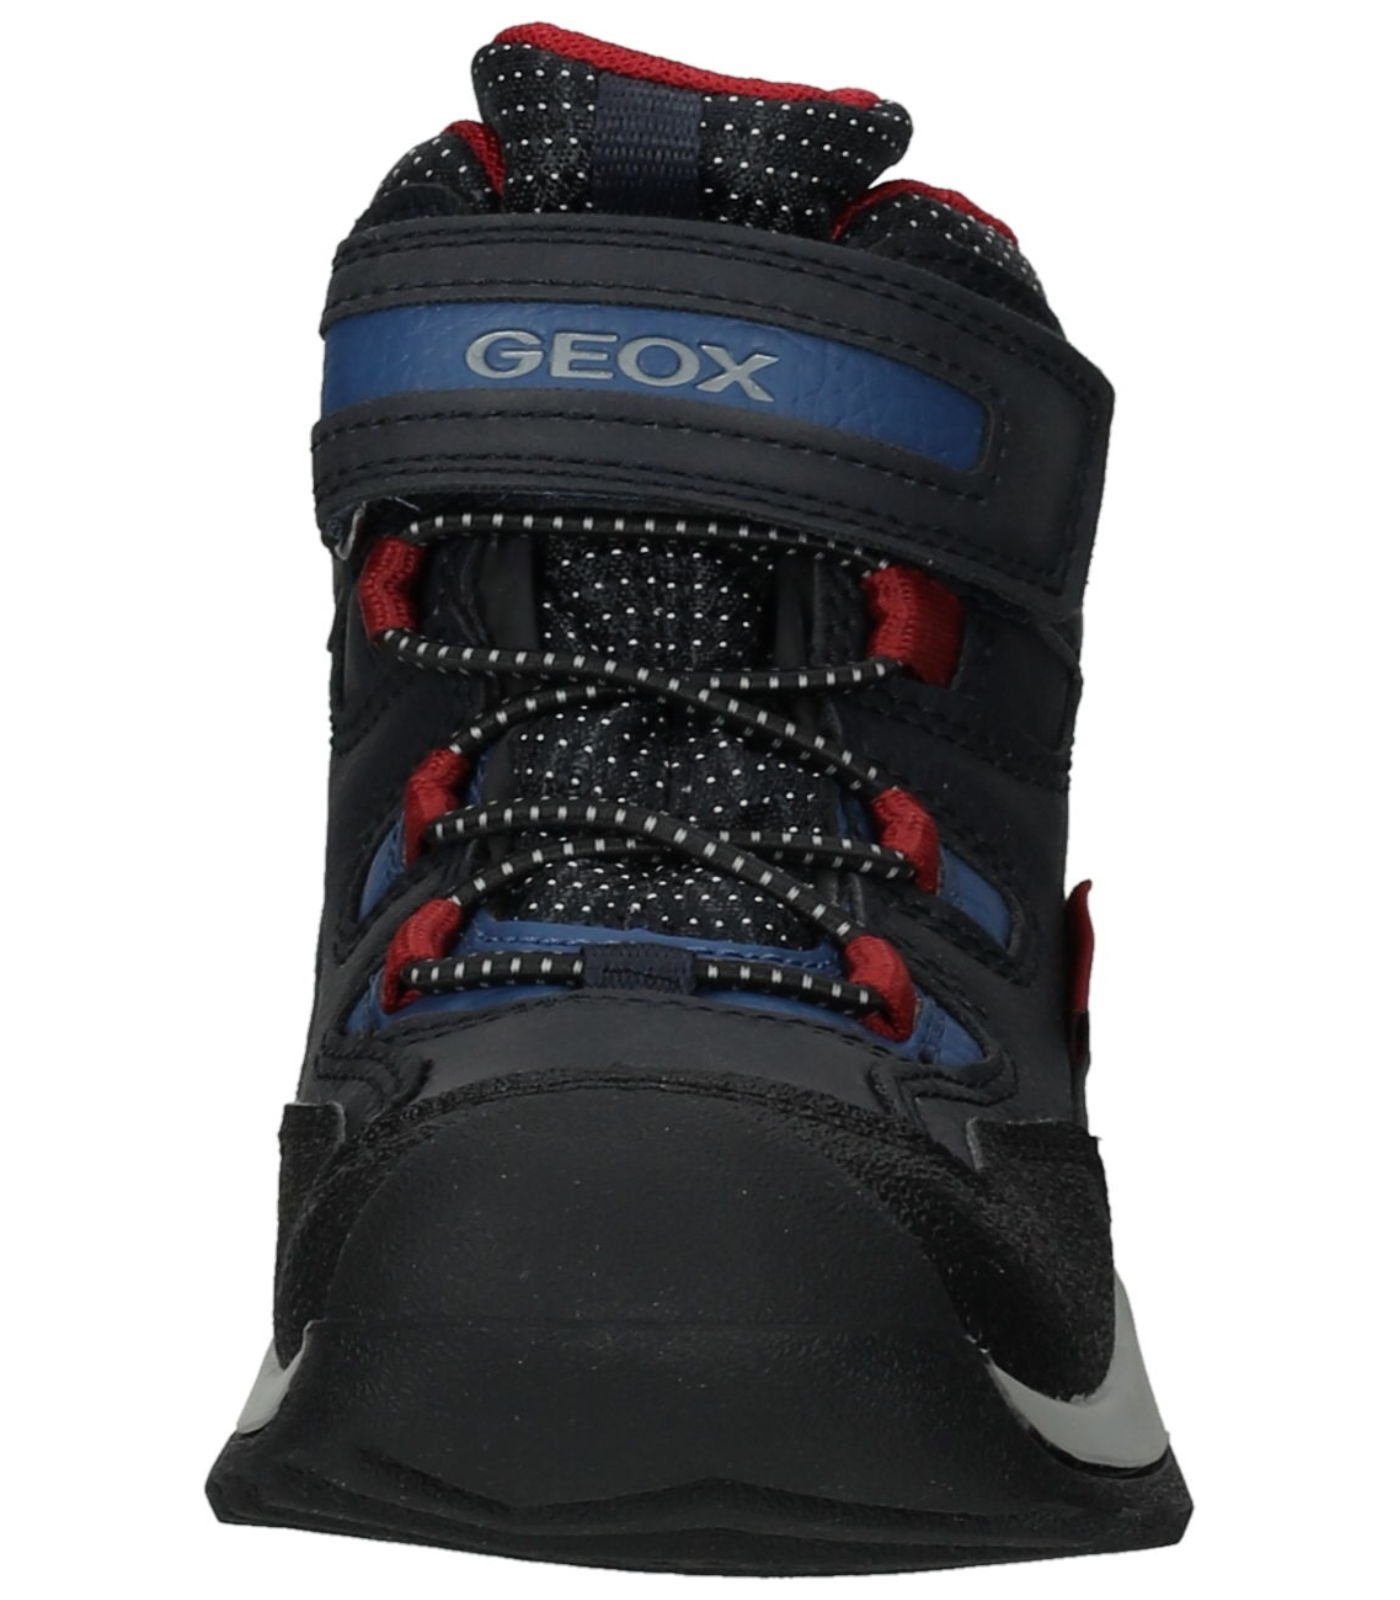 Geox Stiefelette Lederimitat/Textil Schnürstiefelette Blau (NAVY/DK RED)